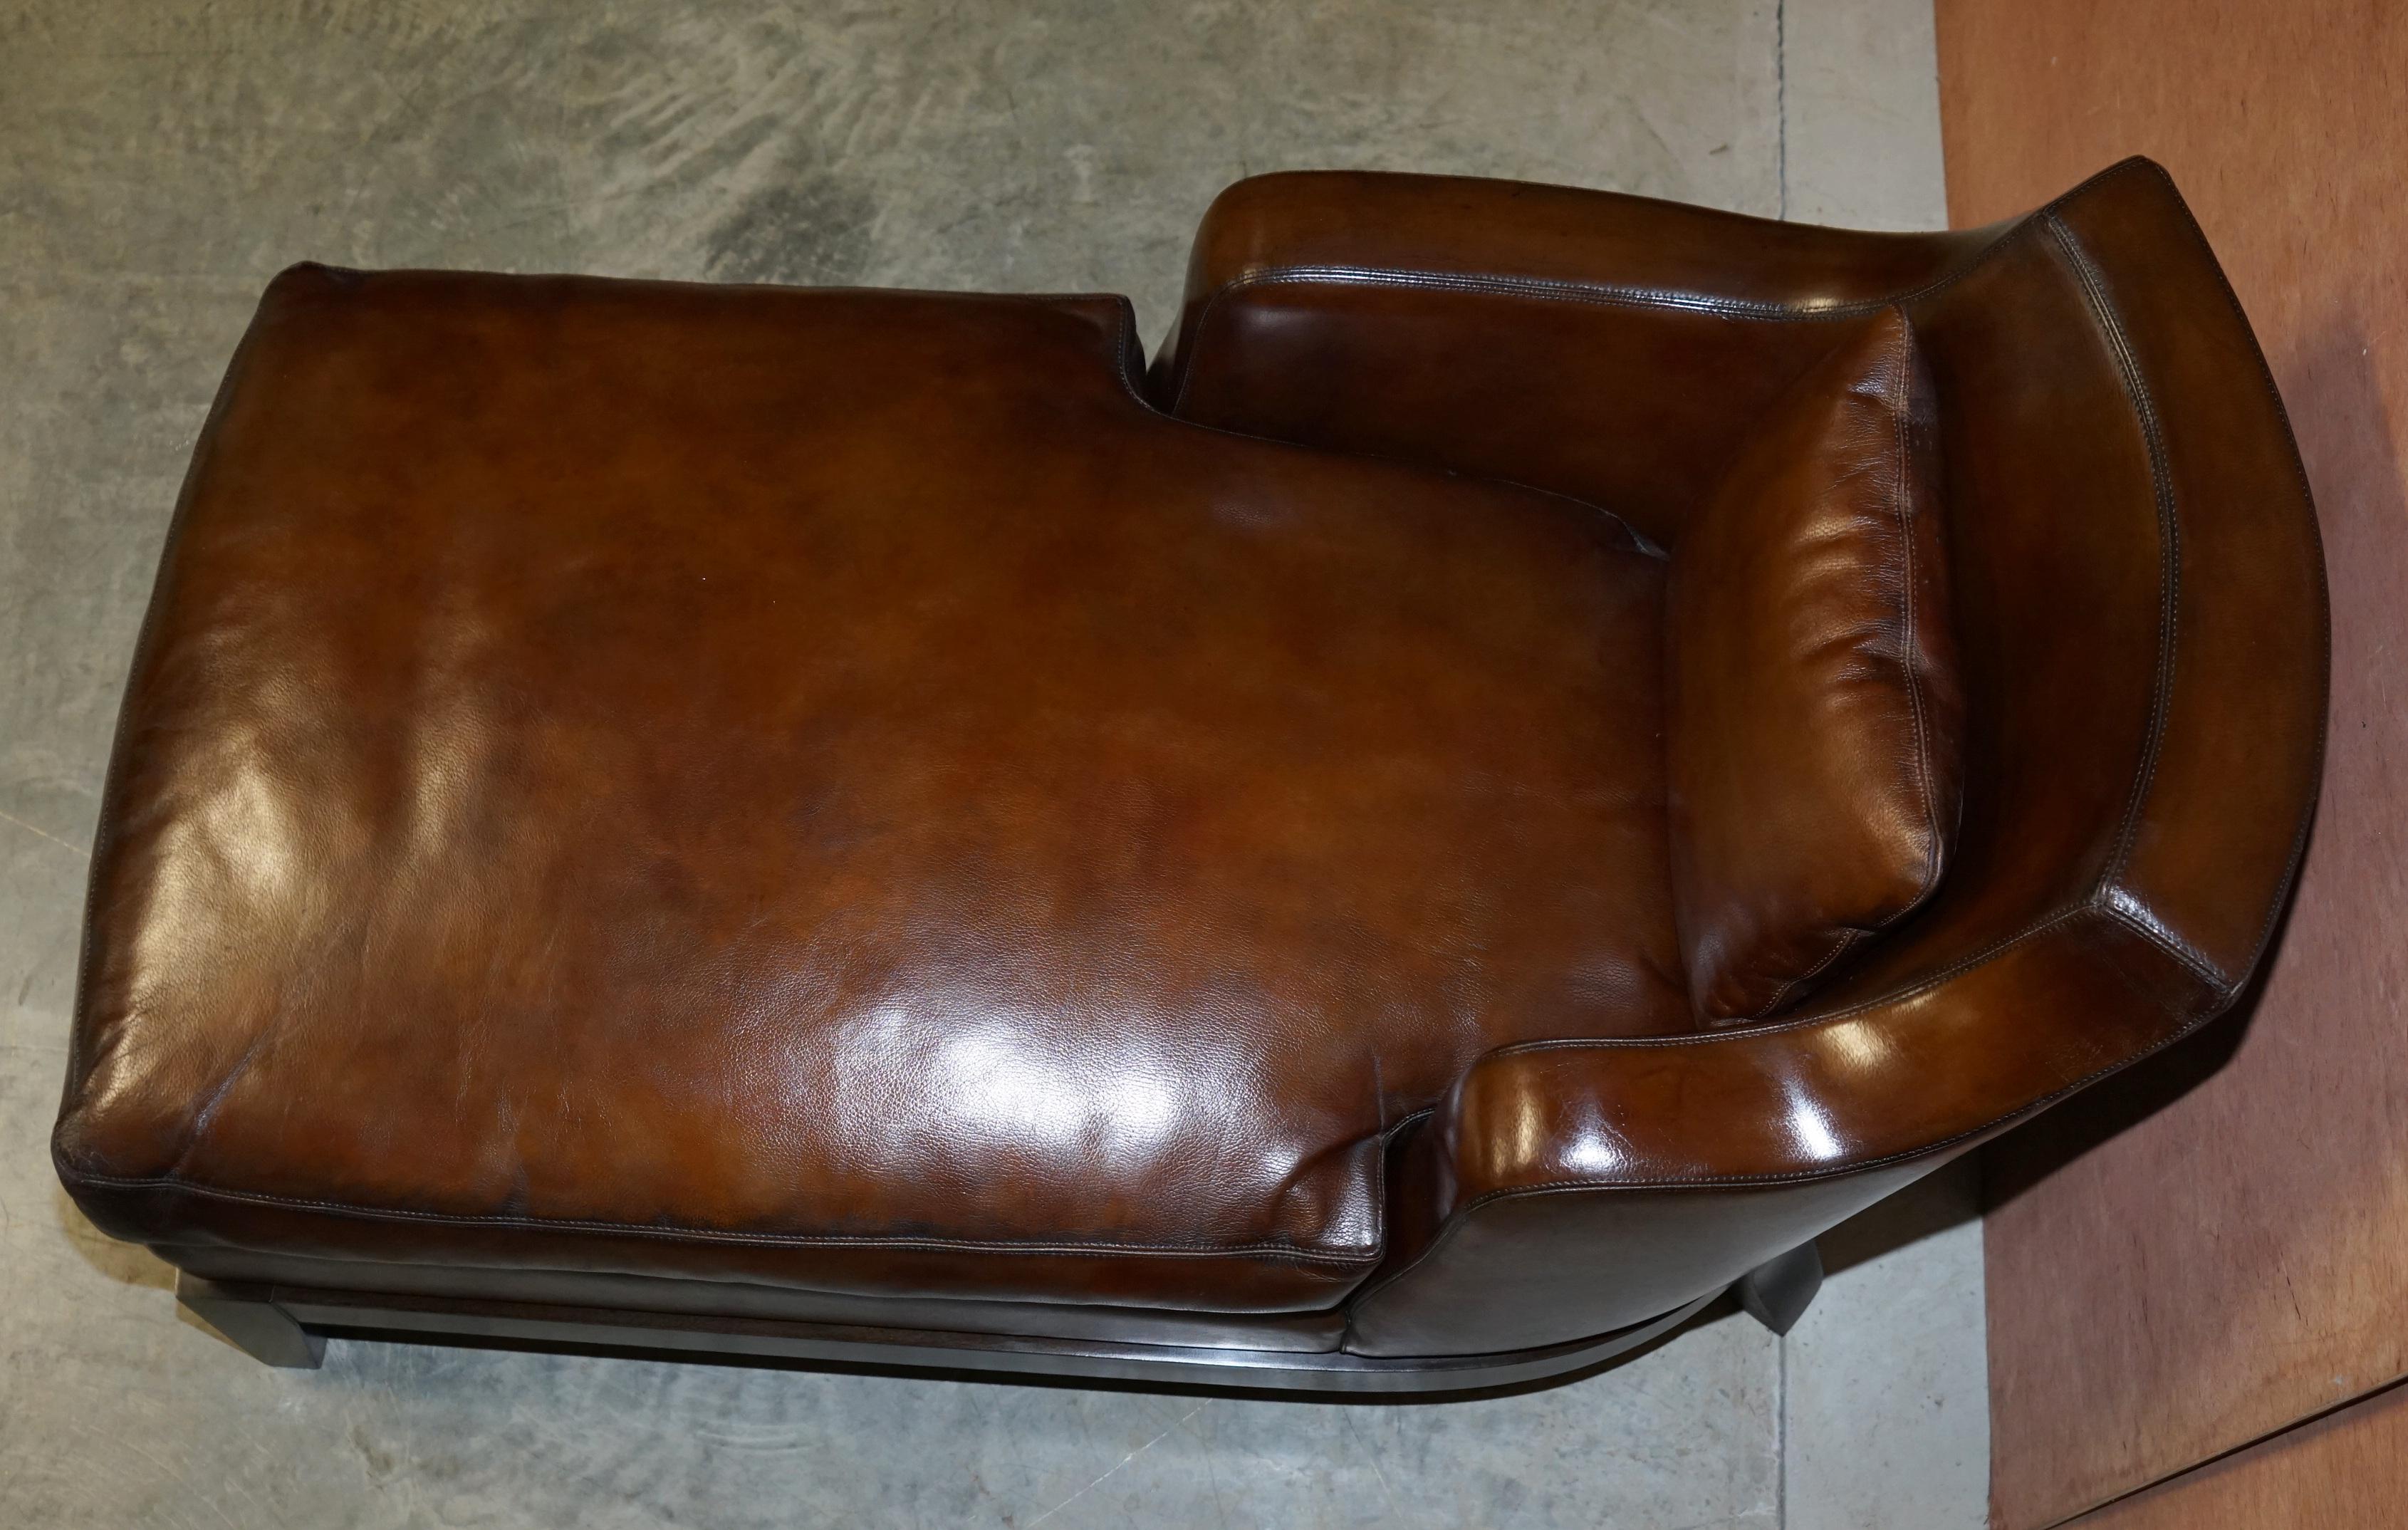 Rare Restored Promemoria Gioconda Italian Brown Leather Chaise Lounge Daybed For Sale 4